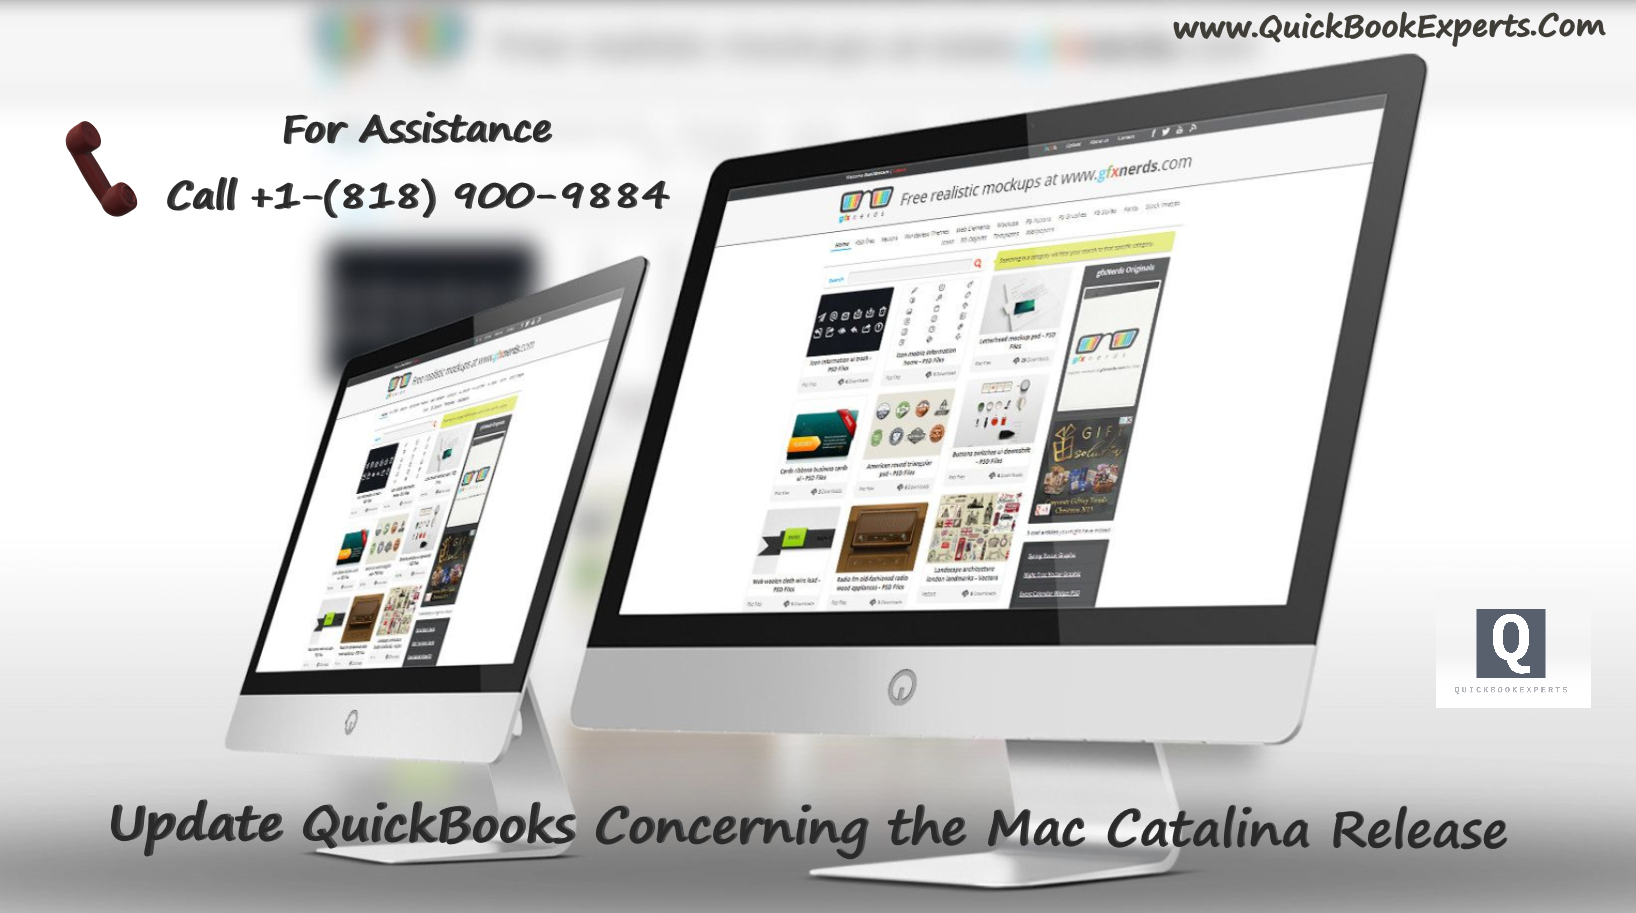 quickbooks for mac 2016 desktop